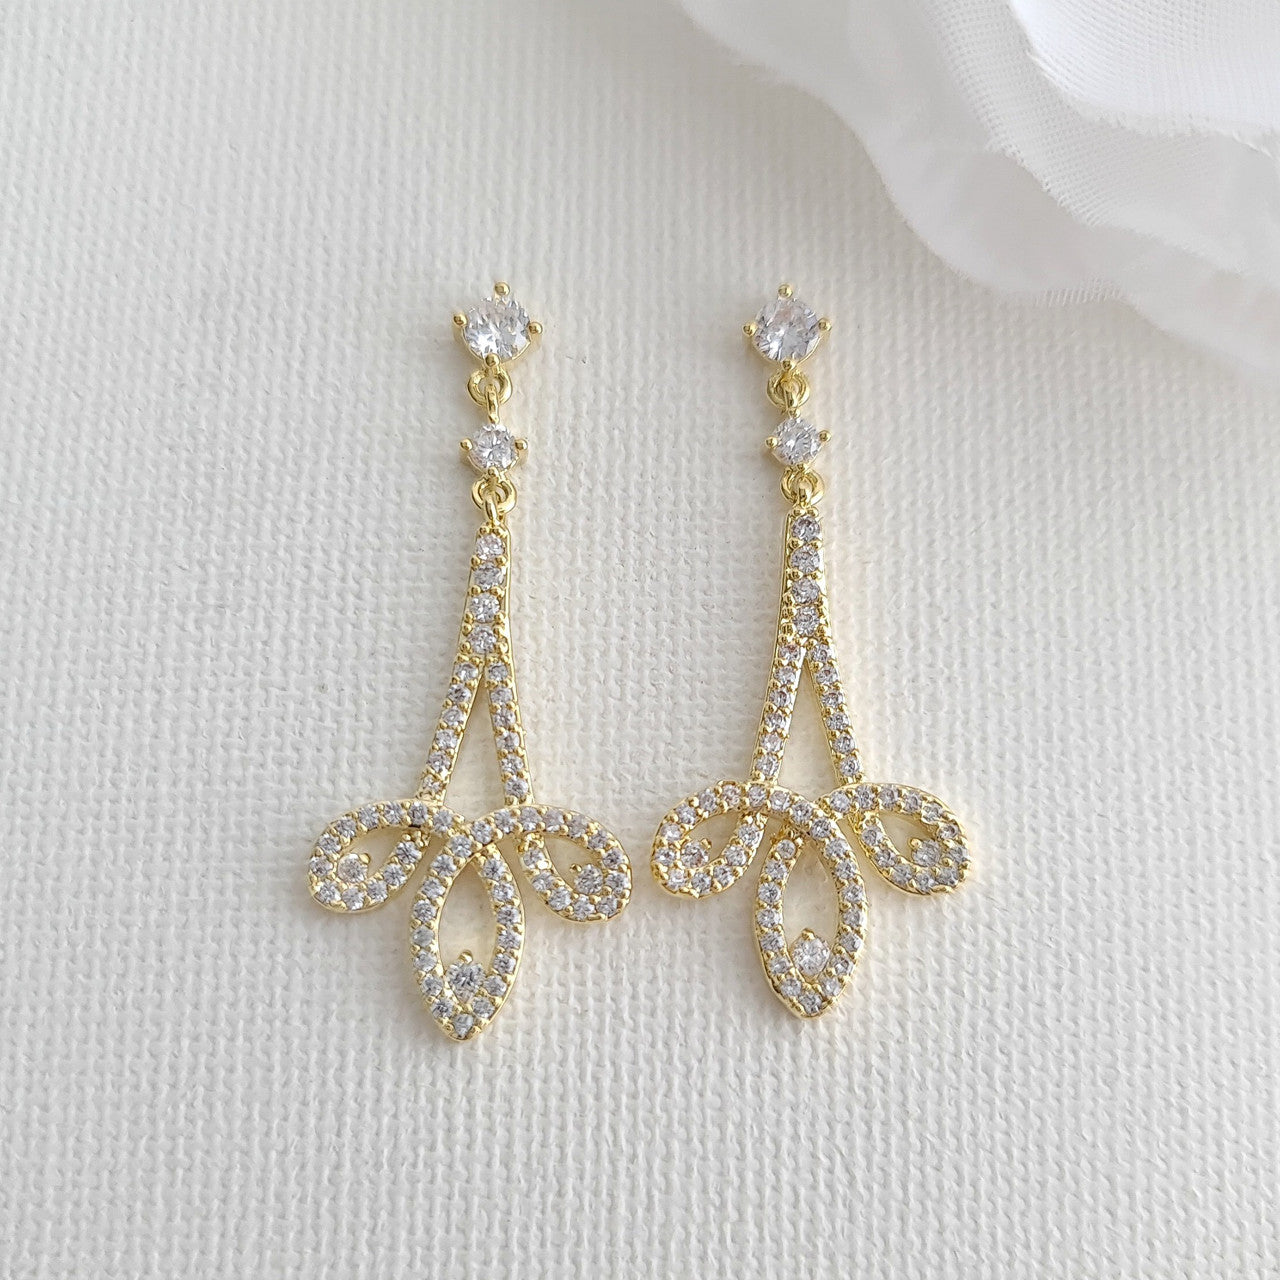 Silver & Cubic Zirconia Drop Earrings- Allison